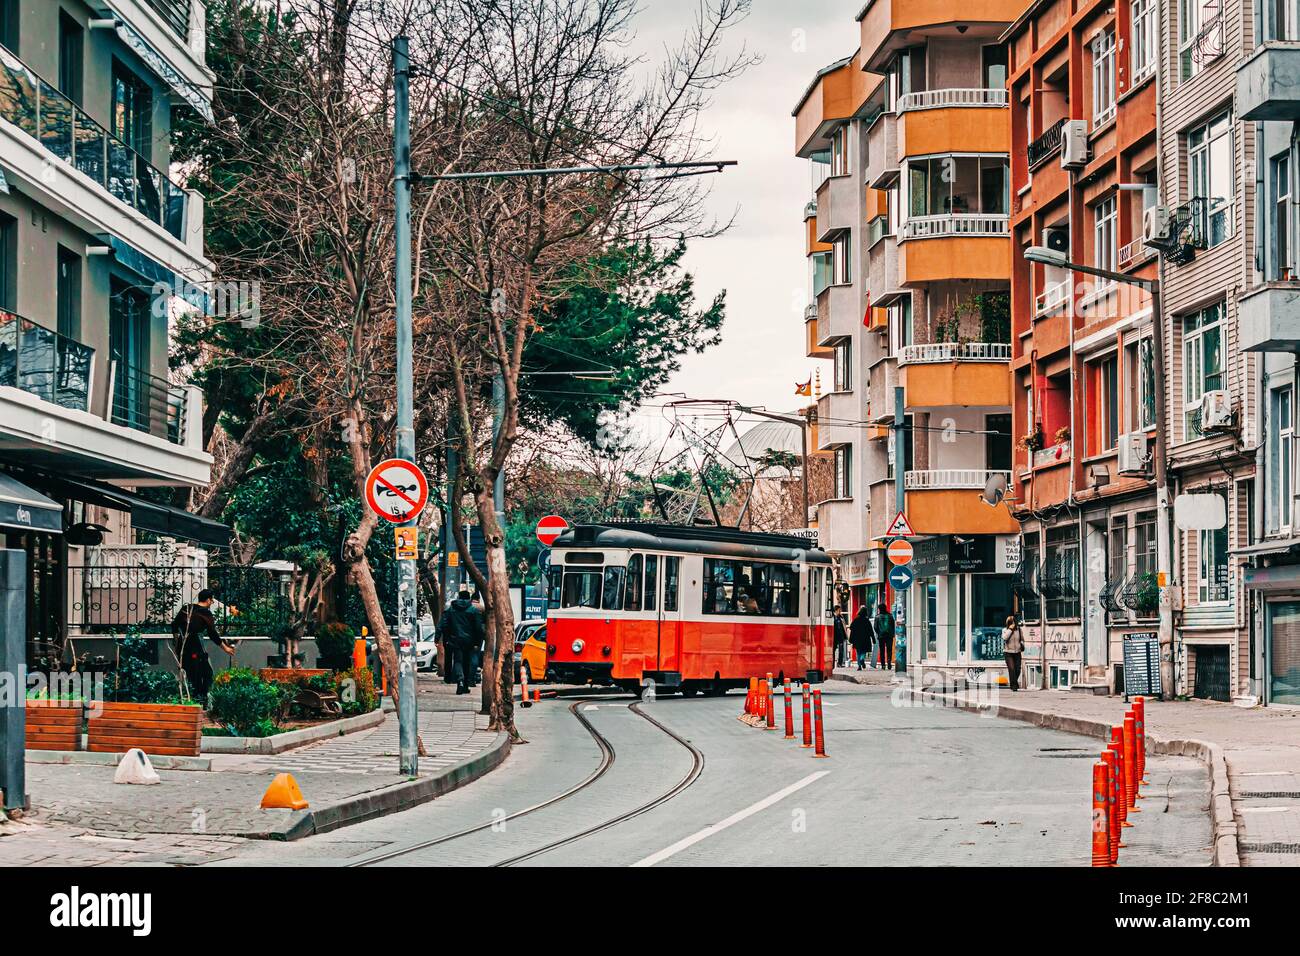 Istanbul, Türkei: 15. März 2018: Kadikoy - Moda nostalgische Straßenbahn. Das trendige Viertel ist voller farbenfroher Gebäude auf der asiatischen Seite Istanbuls. Stockfoto